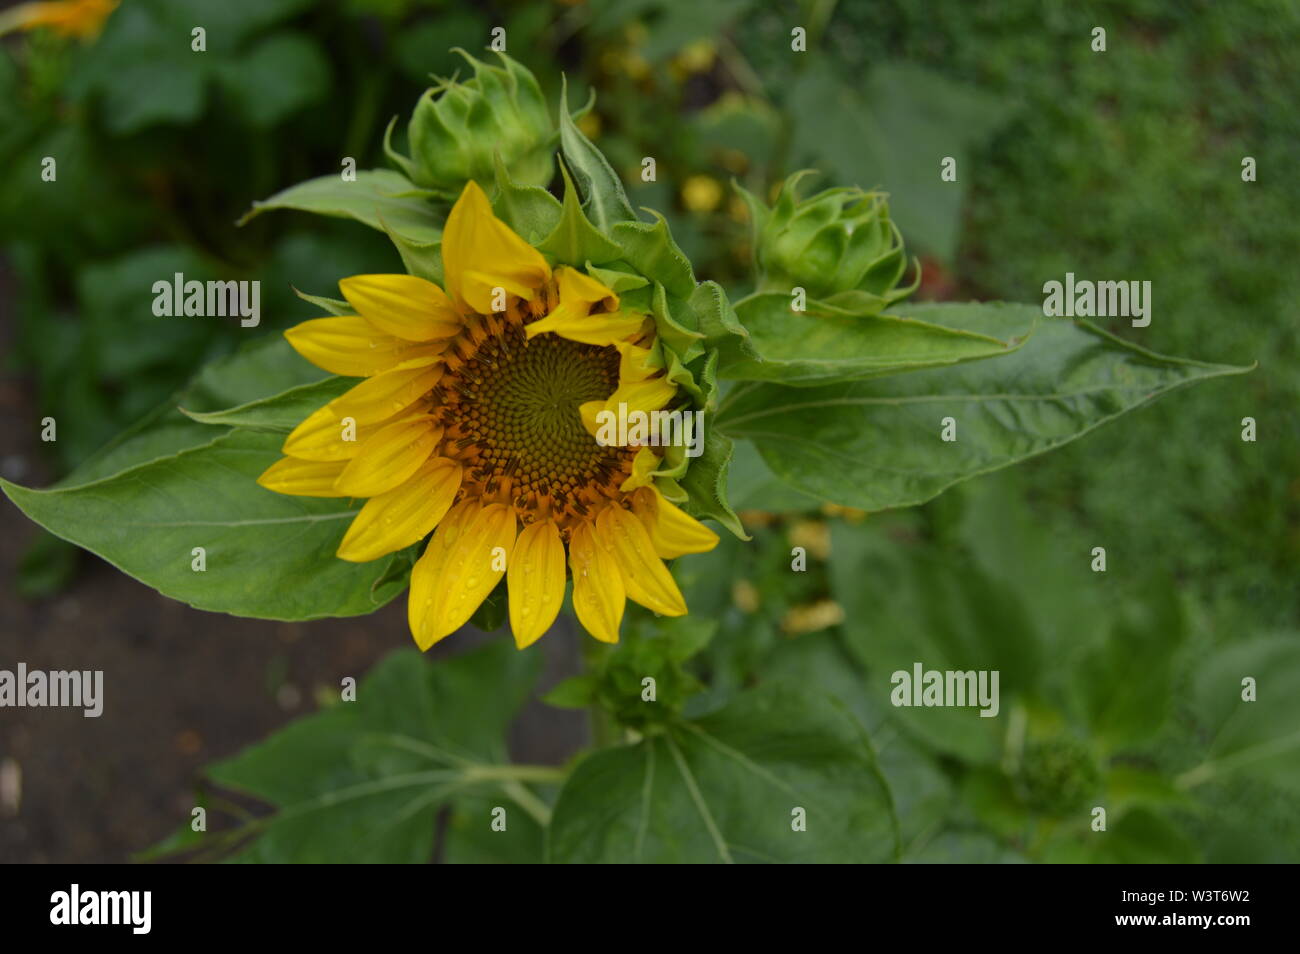 Yellow multi-head sunflower Stock Photo